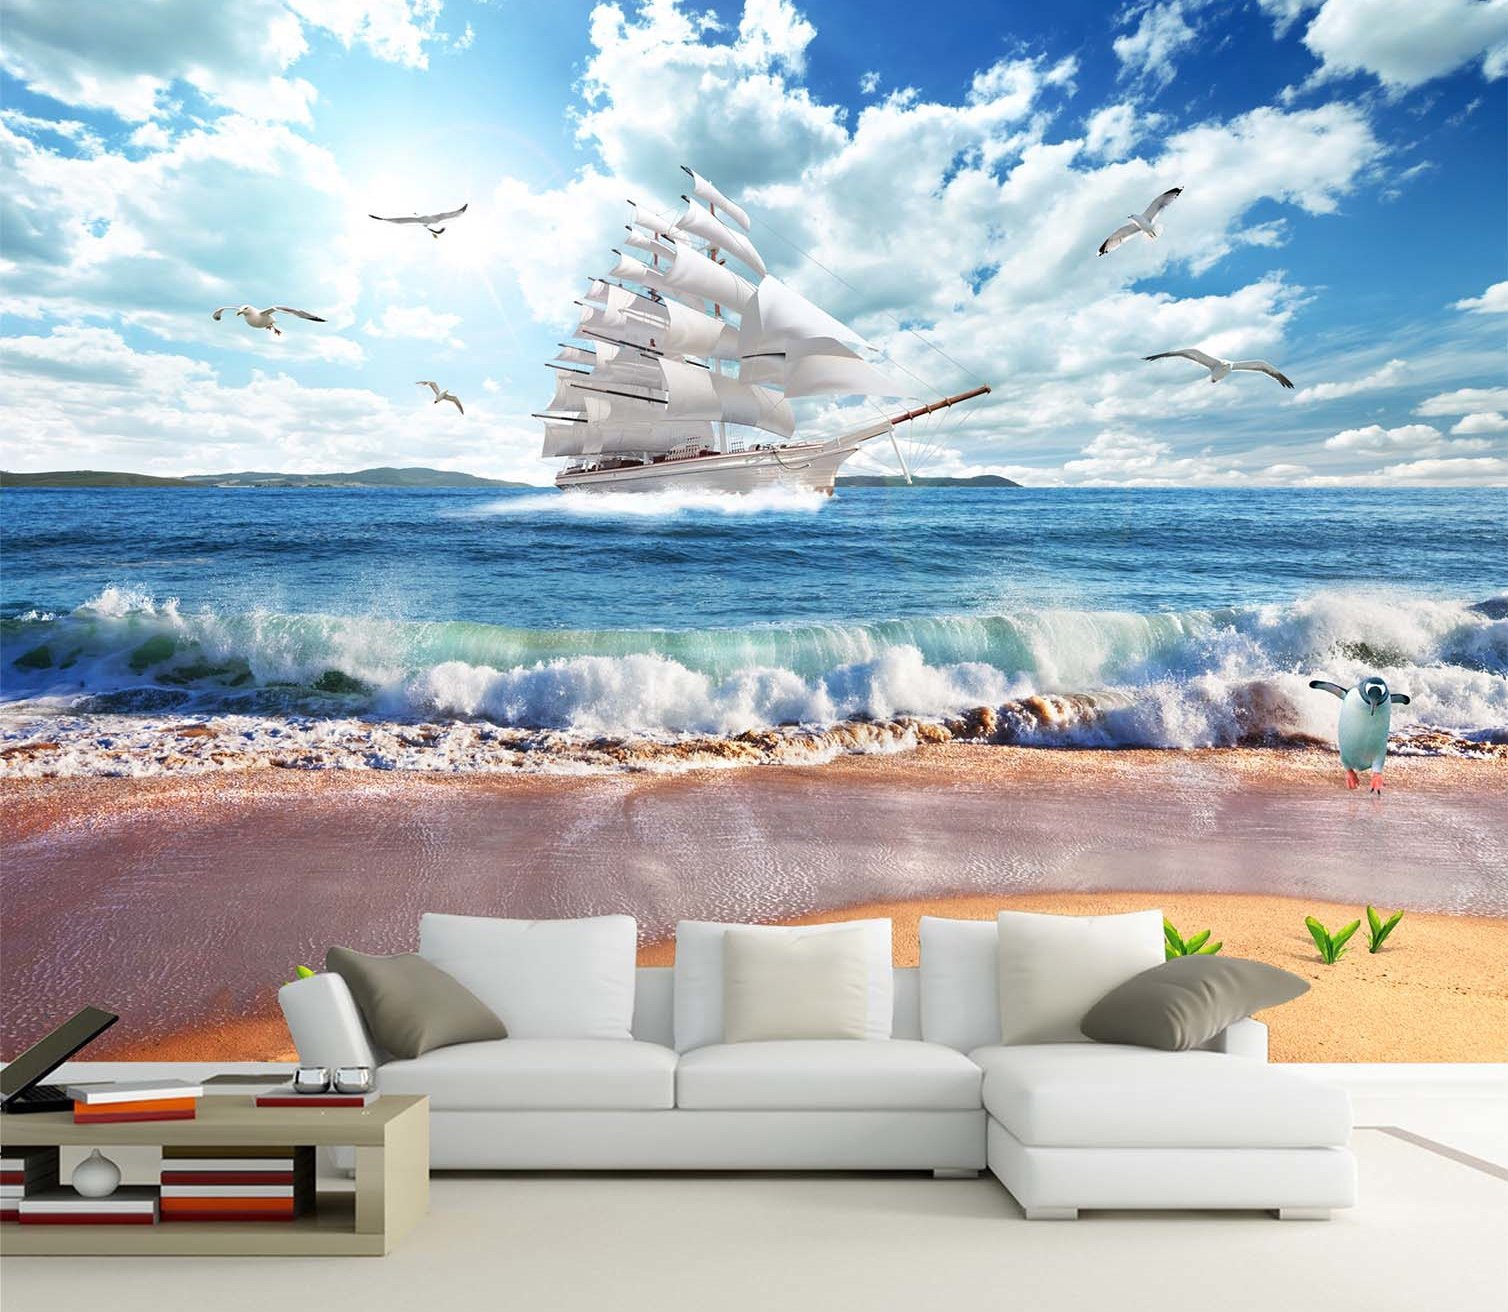 3D Sailing Boat 326 Wallpaper AJ Wallpaper 